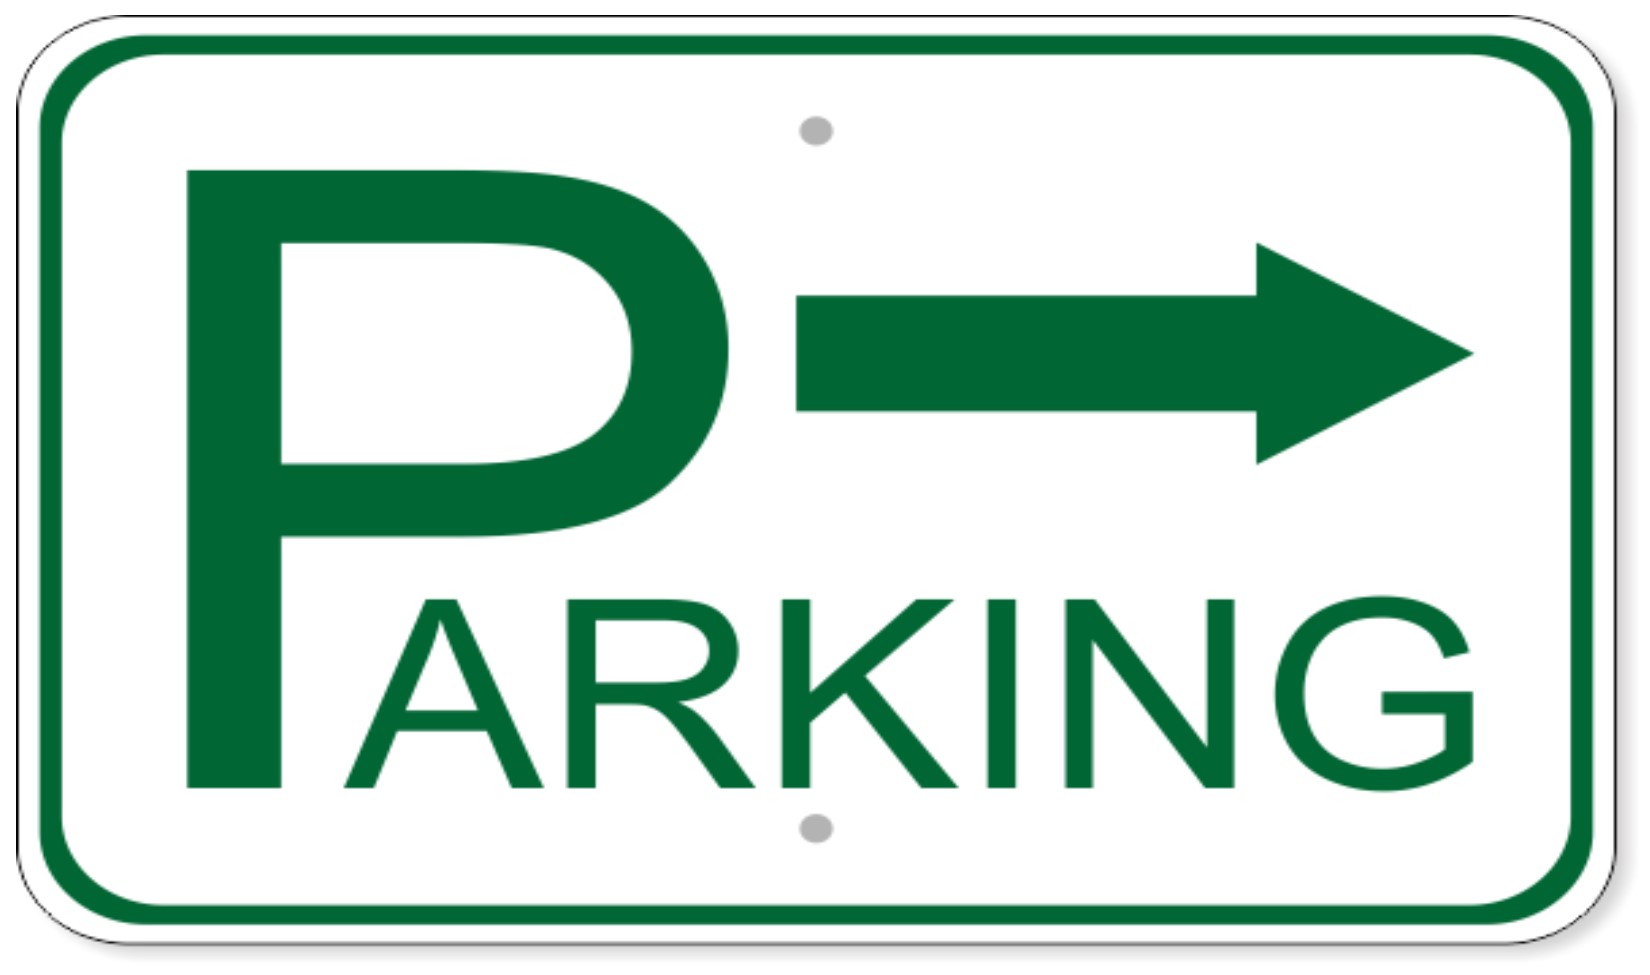 Festival Parking Information